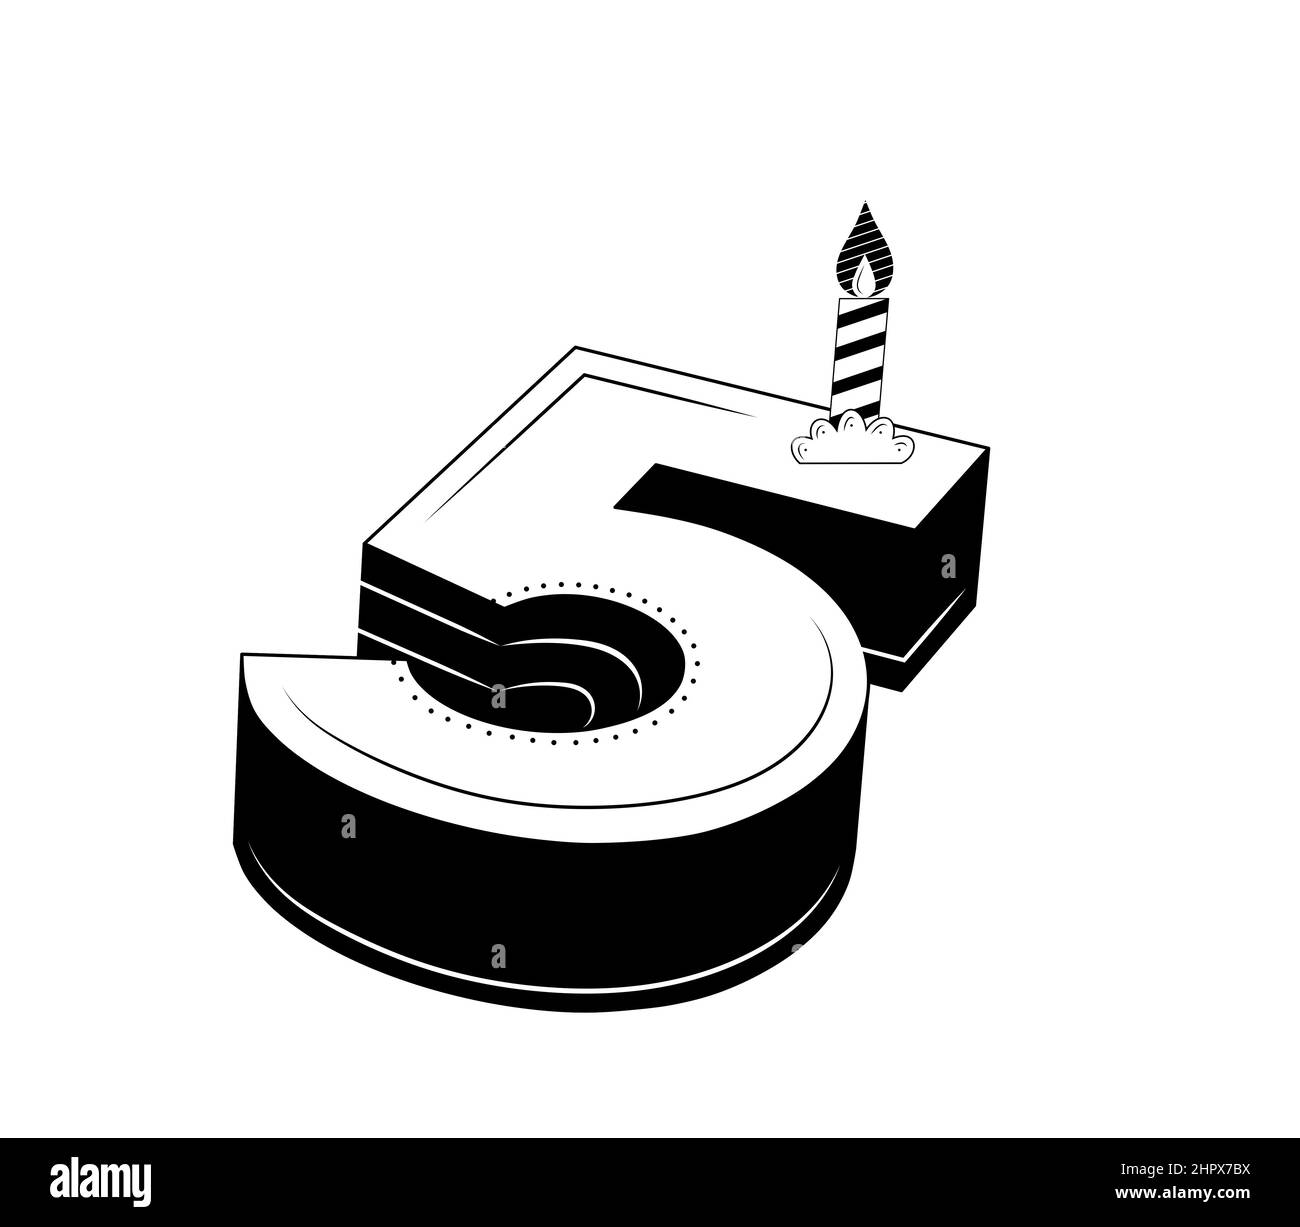 torta a forma di numero 5 in bianco e nero, illustrazione 3d isolata su sfondo bianco Foto Stock